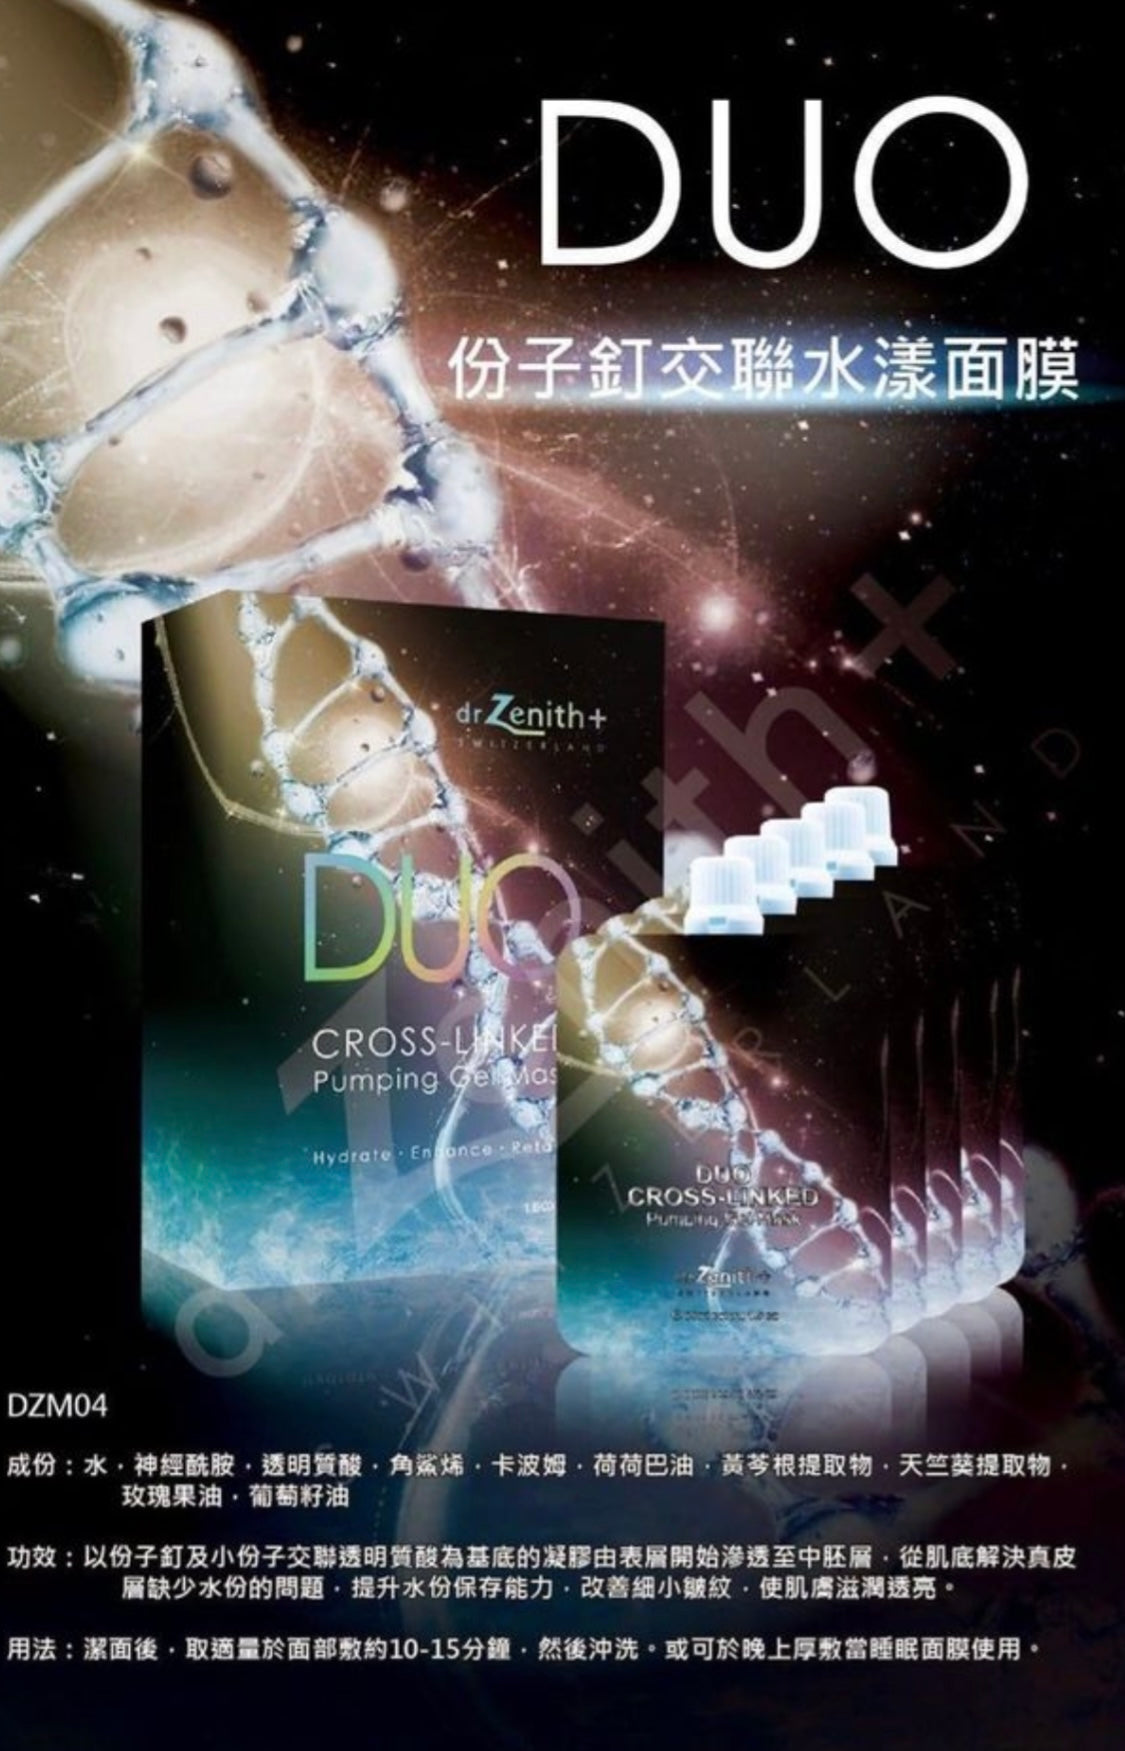 Dr Zenith DUO cross Linked Pumping Gel Mask水分子釘水漾面膜 - Beauty’s 5skin 